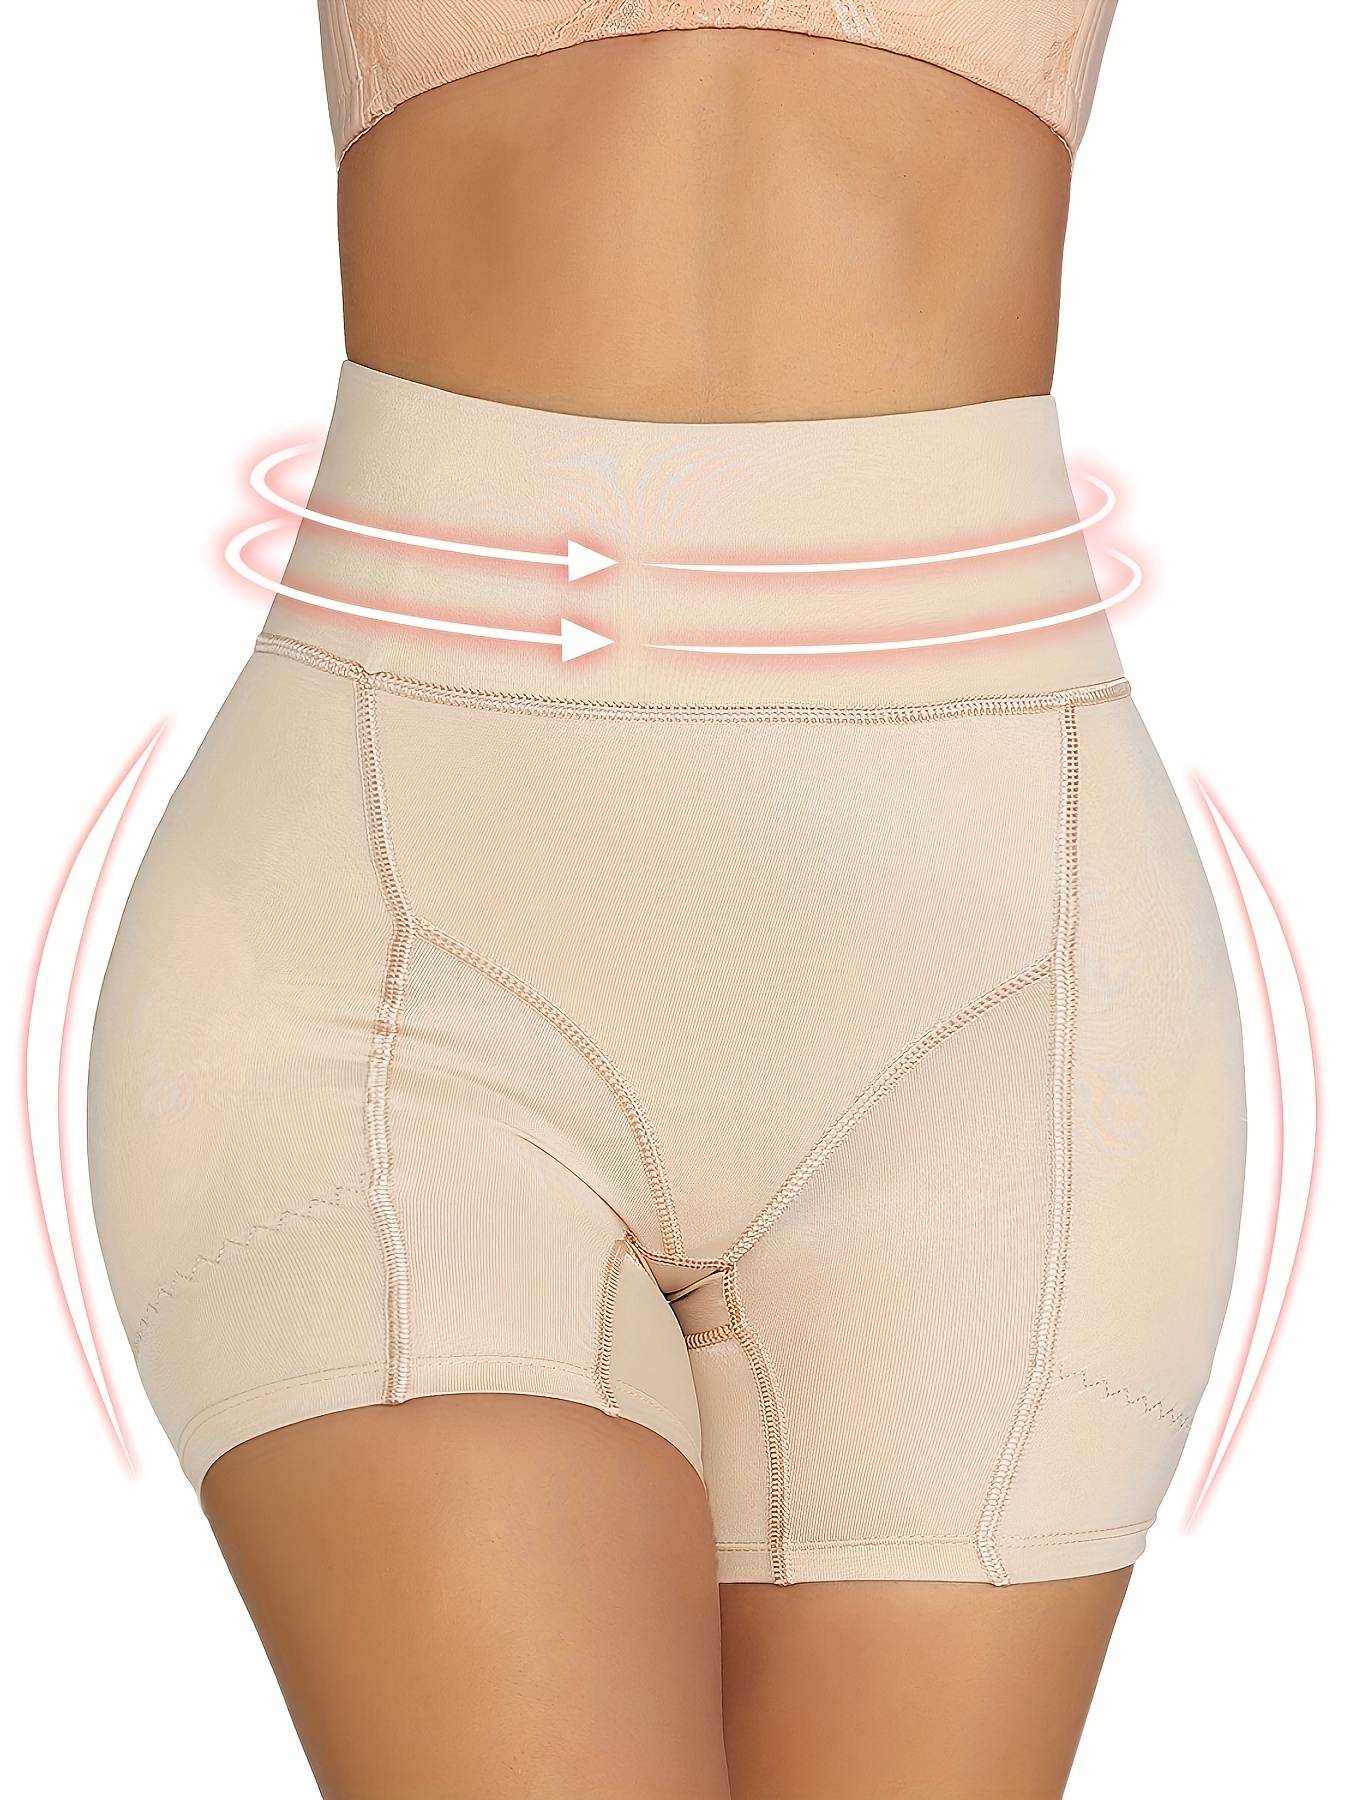 Panty control de abdomen en spandex | Formfit